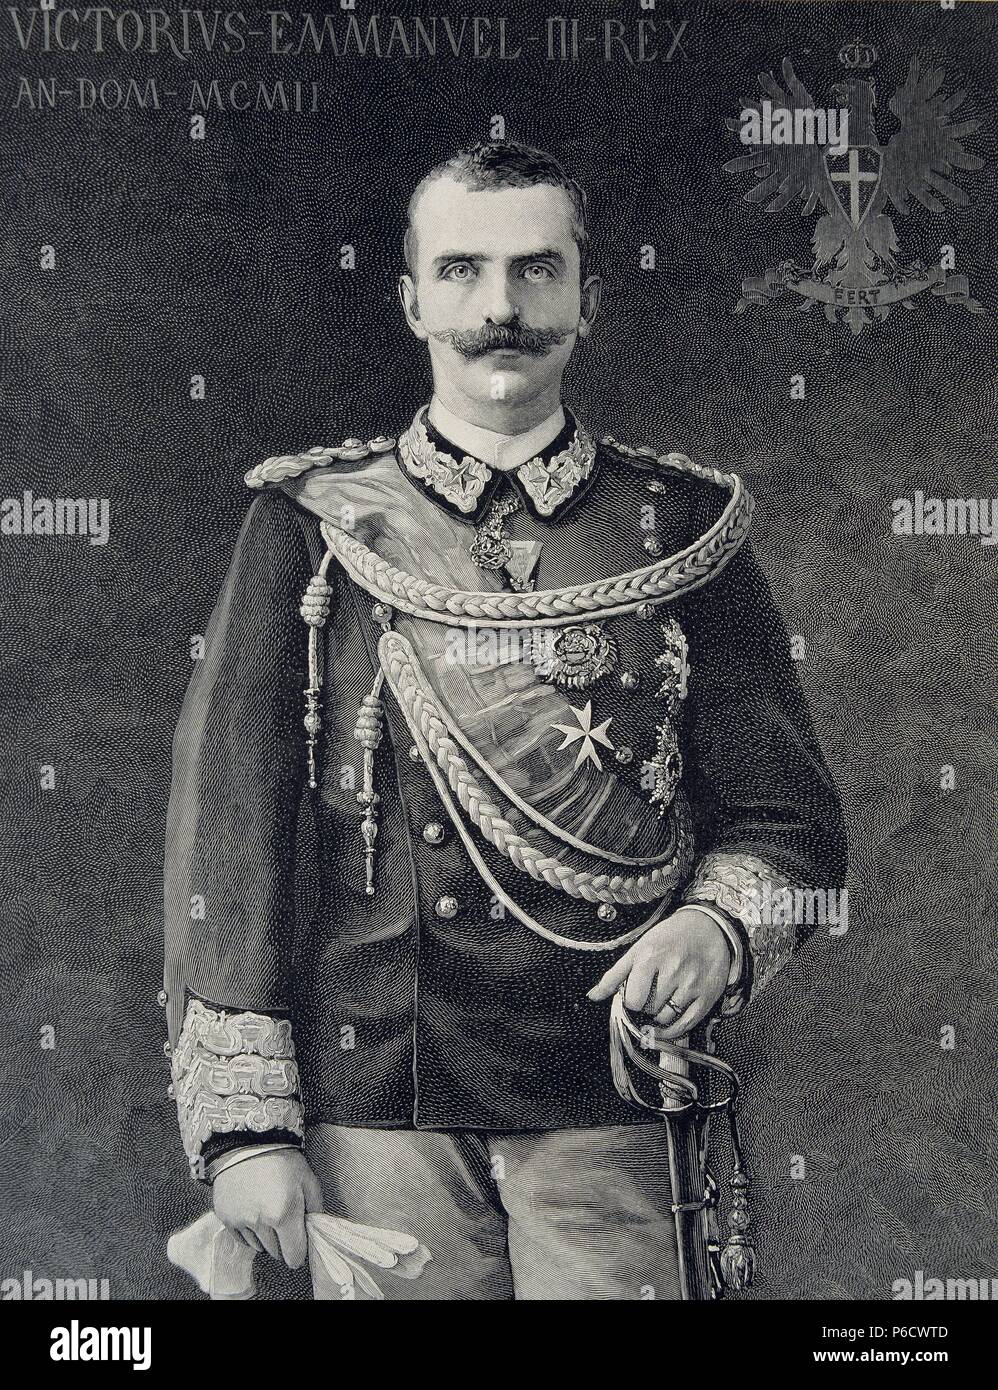 VICTOR MANUEL III. REY DE ITALIA. 1869 - 1947. GRABADO RETRATO DE L¿ABBILDUNG FRANCESA. Stockfoto